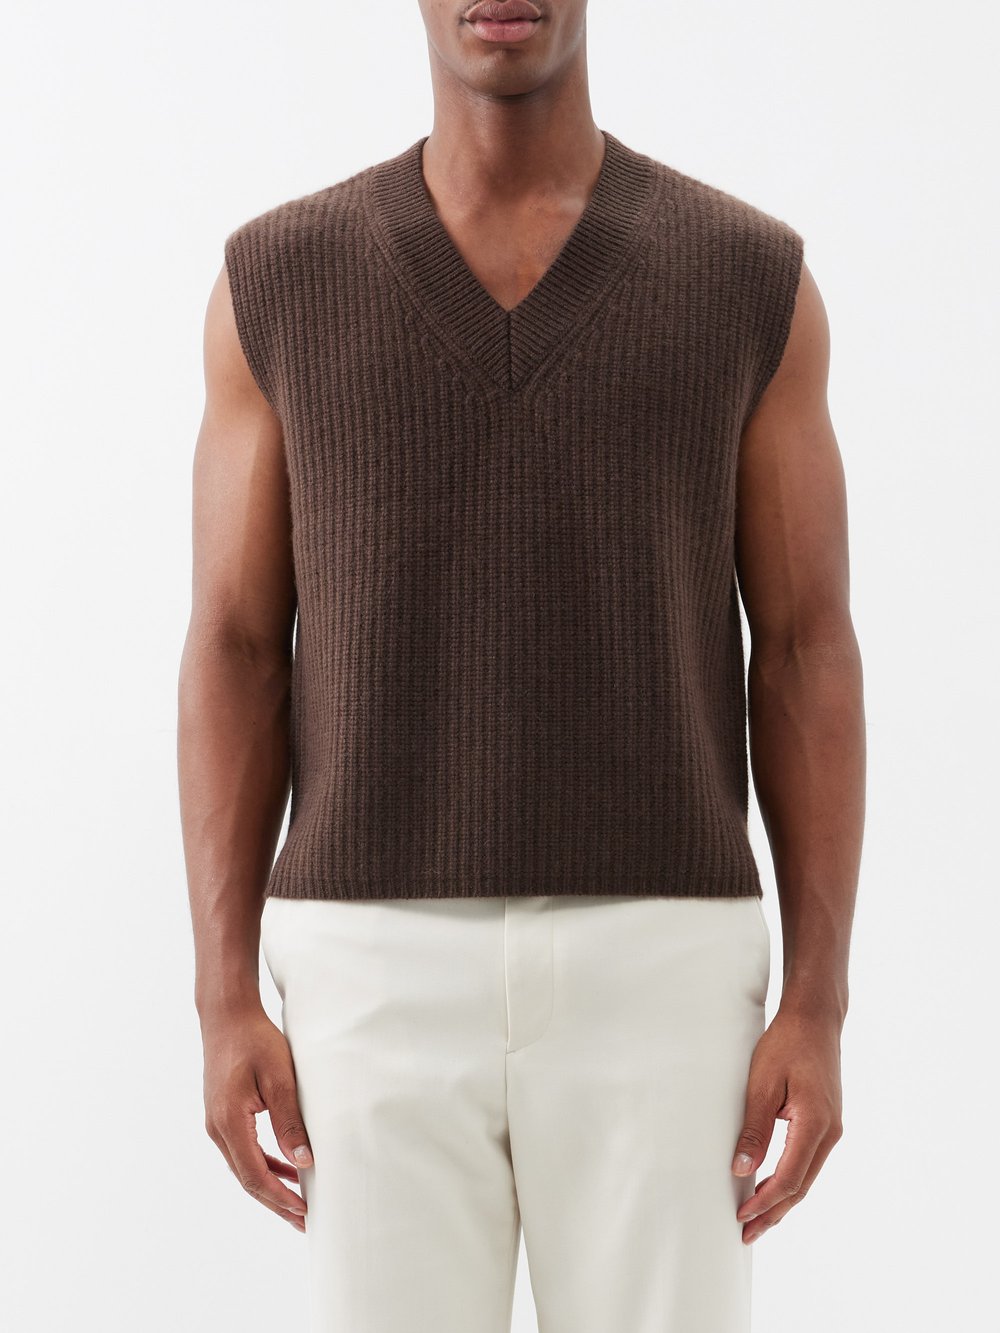 цена Кашемировый свитер-жилет mr southbank Arch4, коричневый